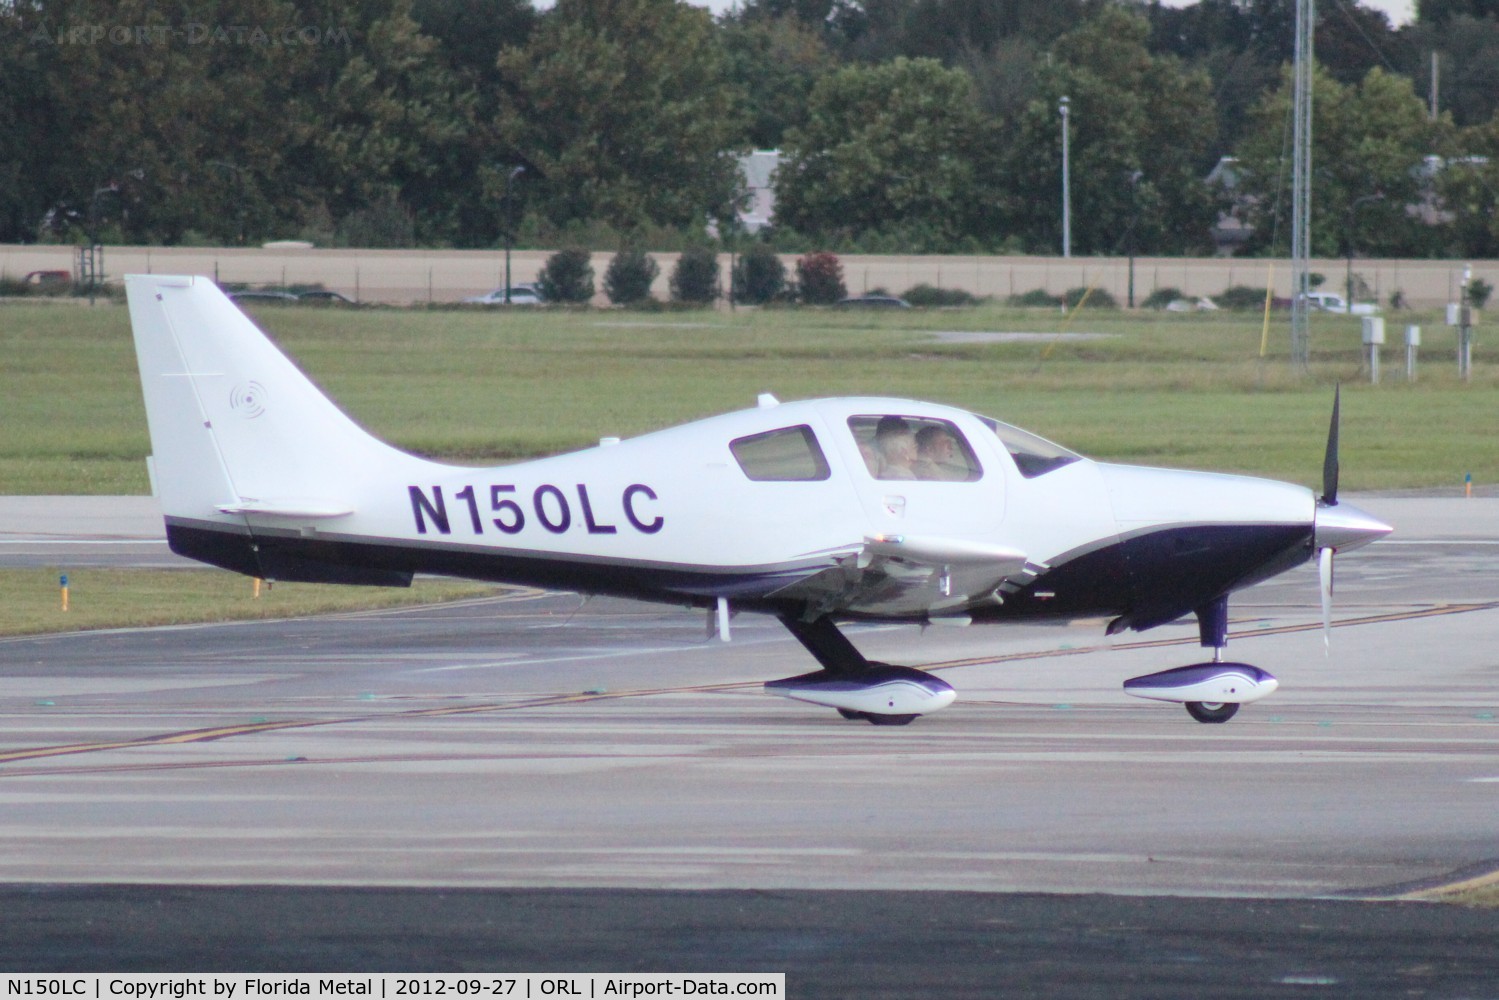 N150LC, 2005 Lancair LC41-550FG C/N 41501, Lancair LC41